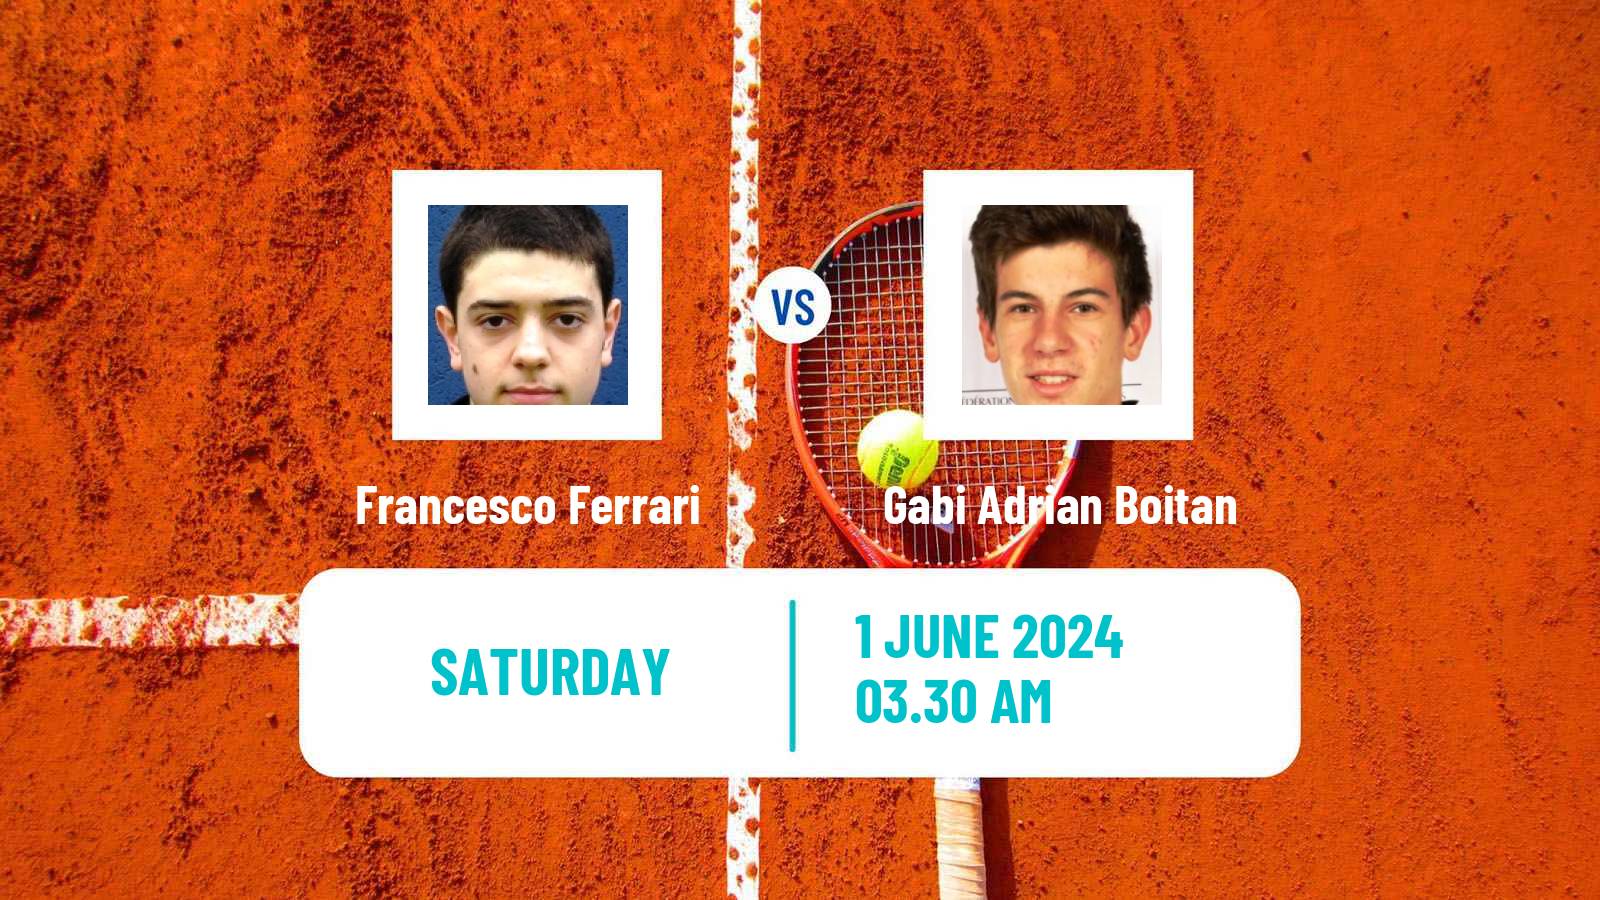 Tennis ITF M15 Constanta Men Francesco Ferrari - Gabi Adrian Boitan